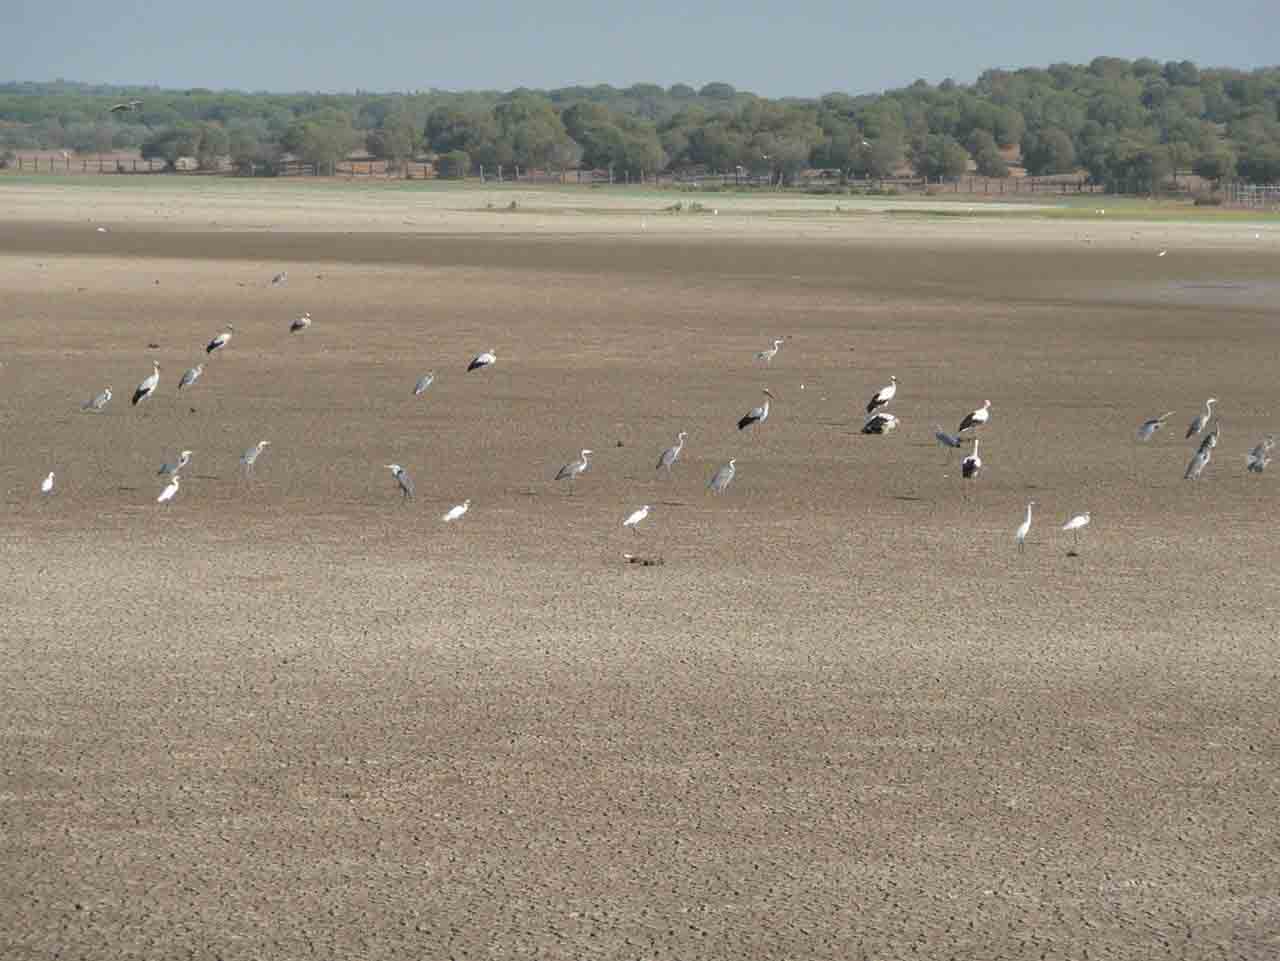 SEO/BirdLife recuerda la "grave situación" que atraviesa Doñana. Marisma de Doñana seca / Foto: SEO/BirdLife